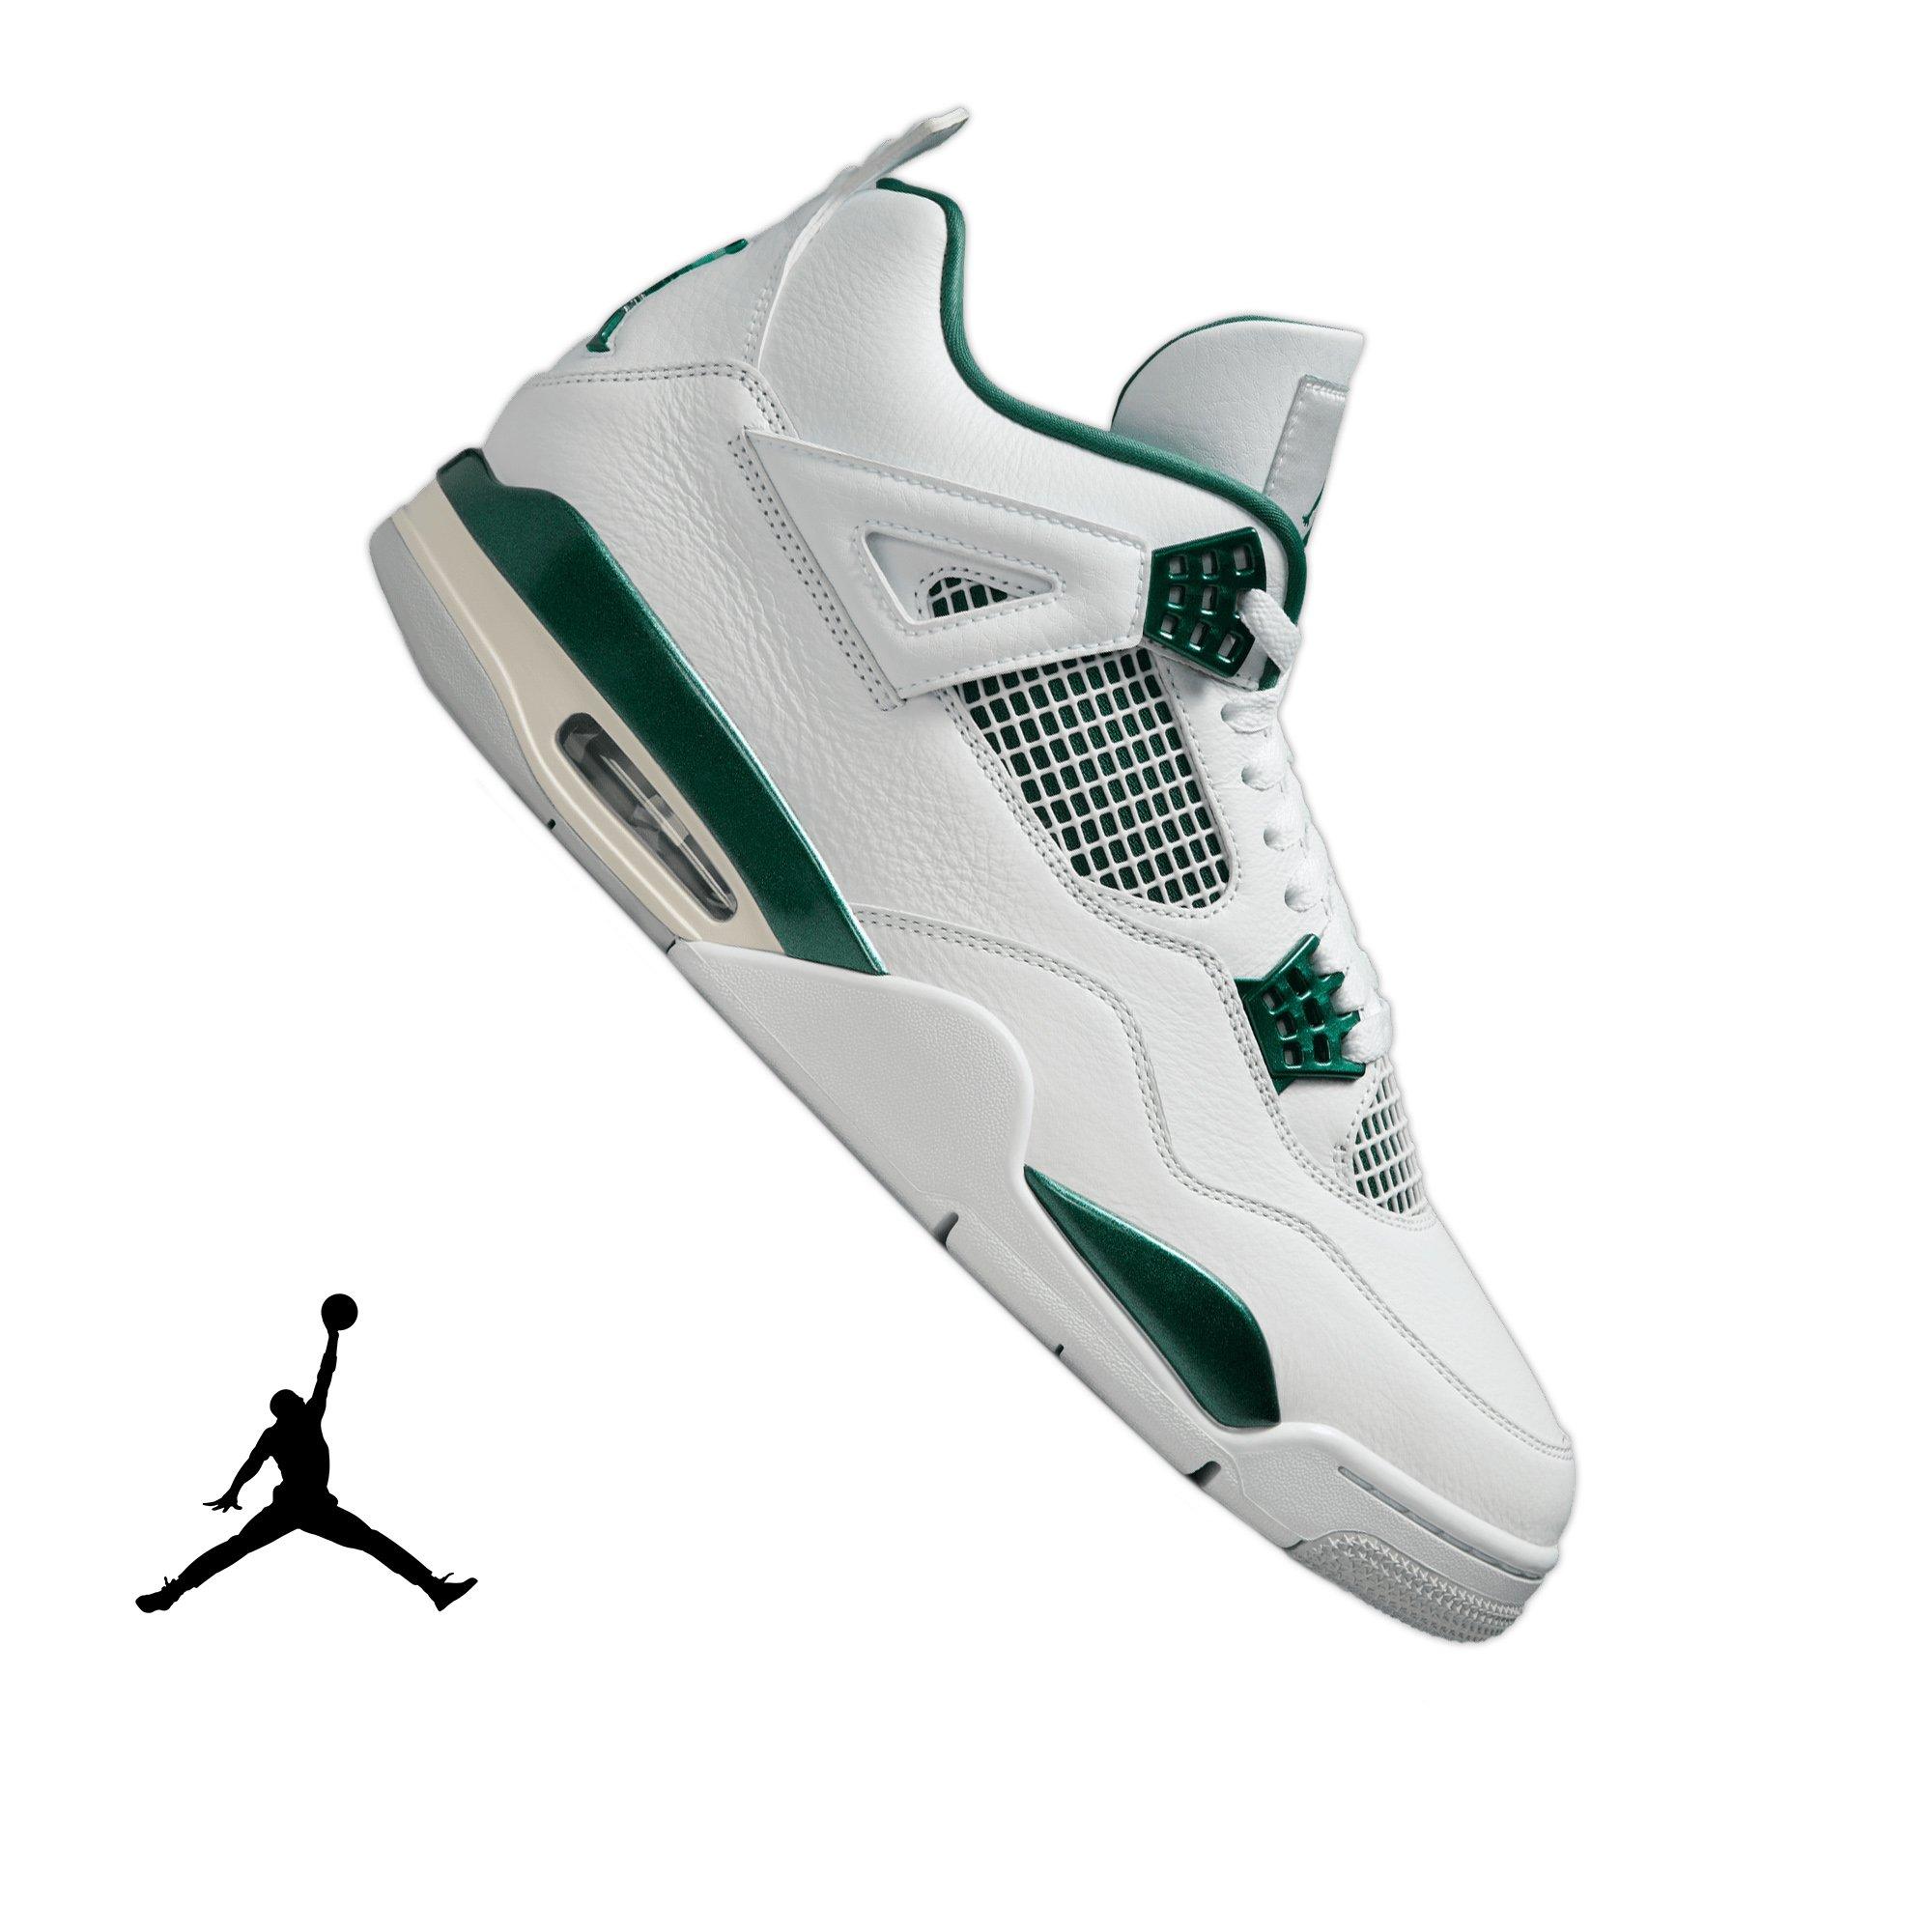 Air Jordan 4 Retro Shoes u0026 Sneakers